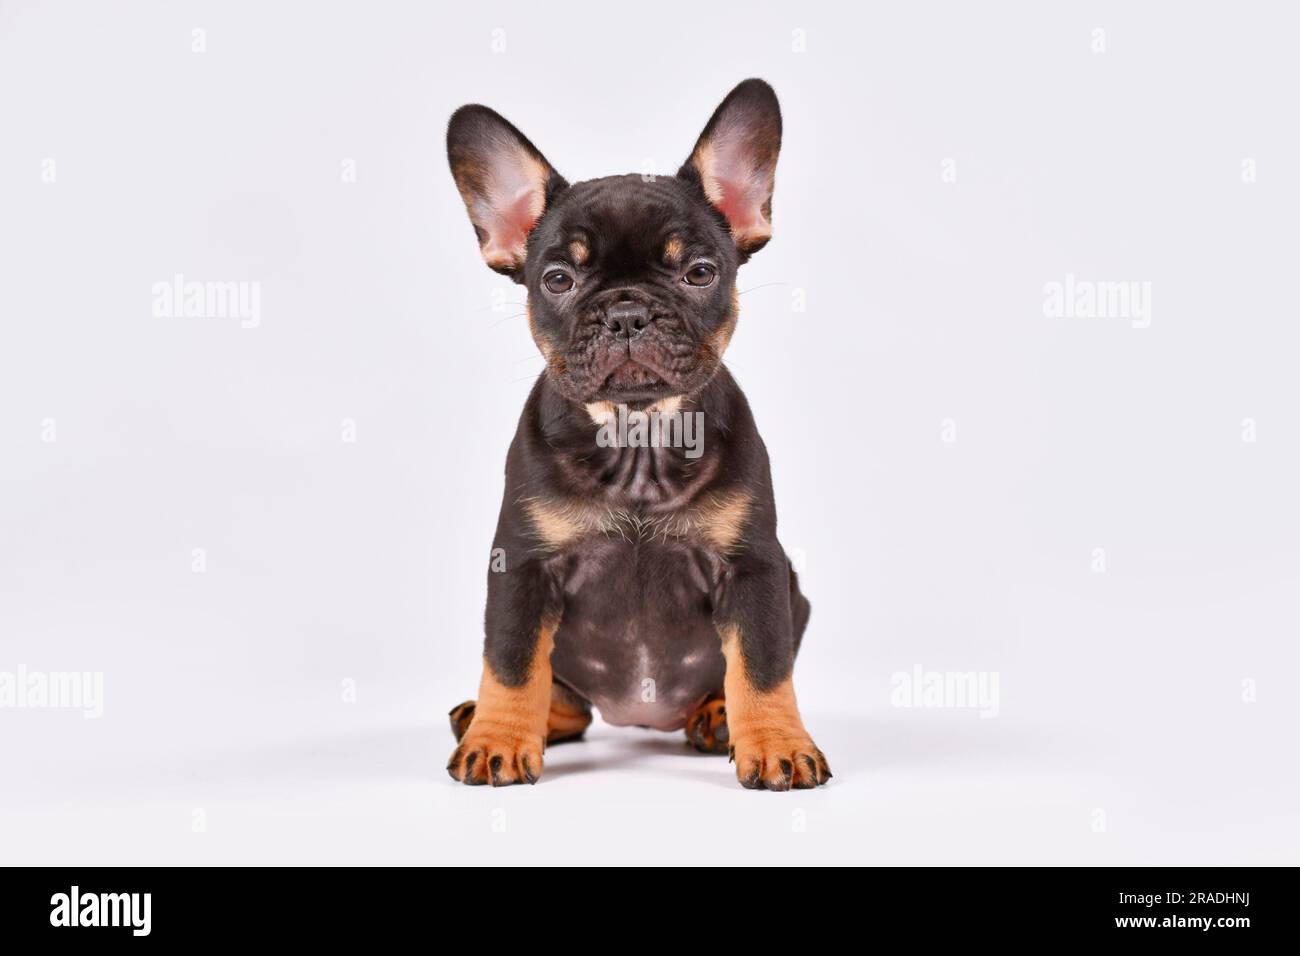 Havane chien Bulldog chiot sur fond blanc Banque D'Images